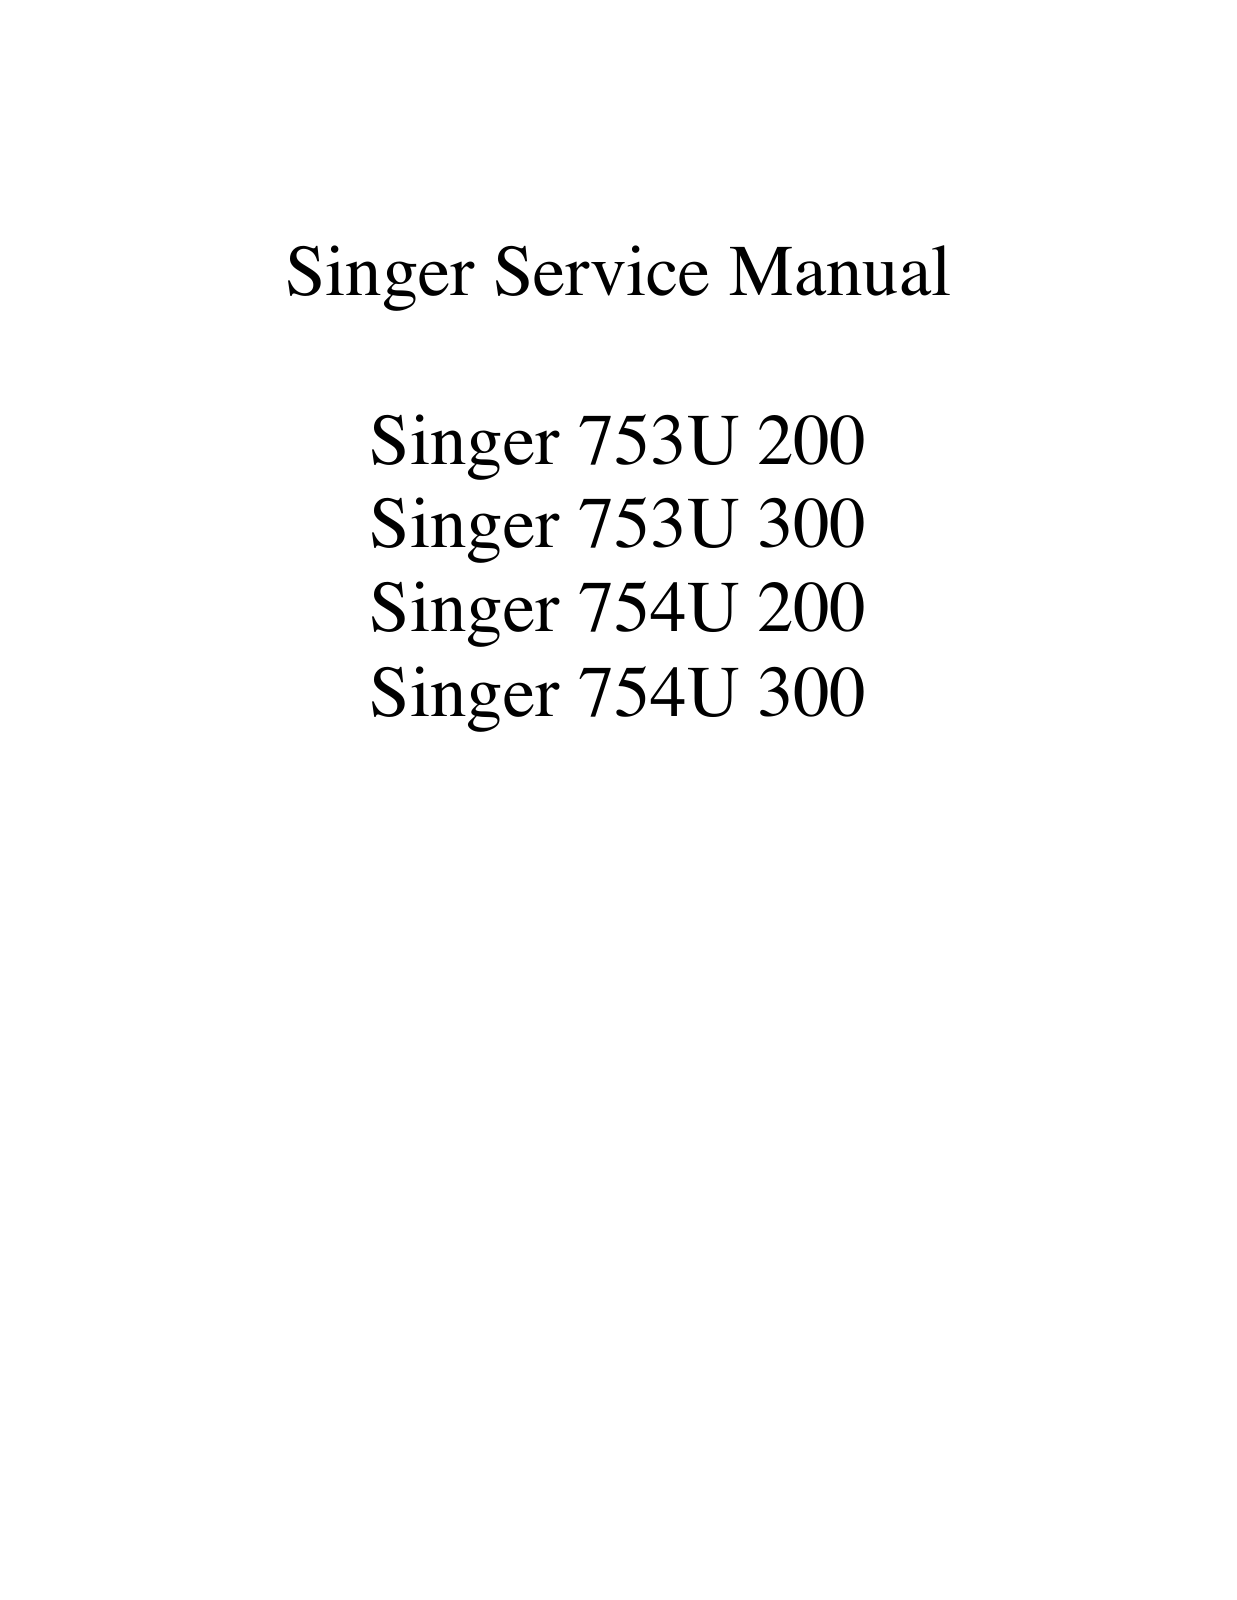 Singer 753U 200, 753U 300, 754U 200, 754U 300 Service Manual